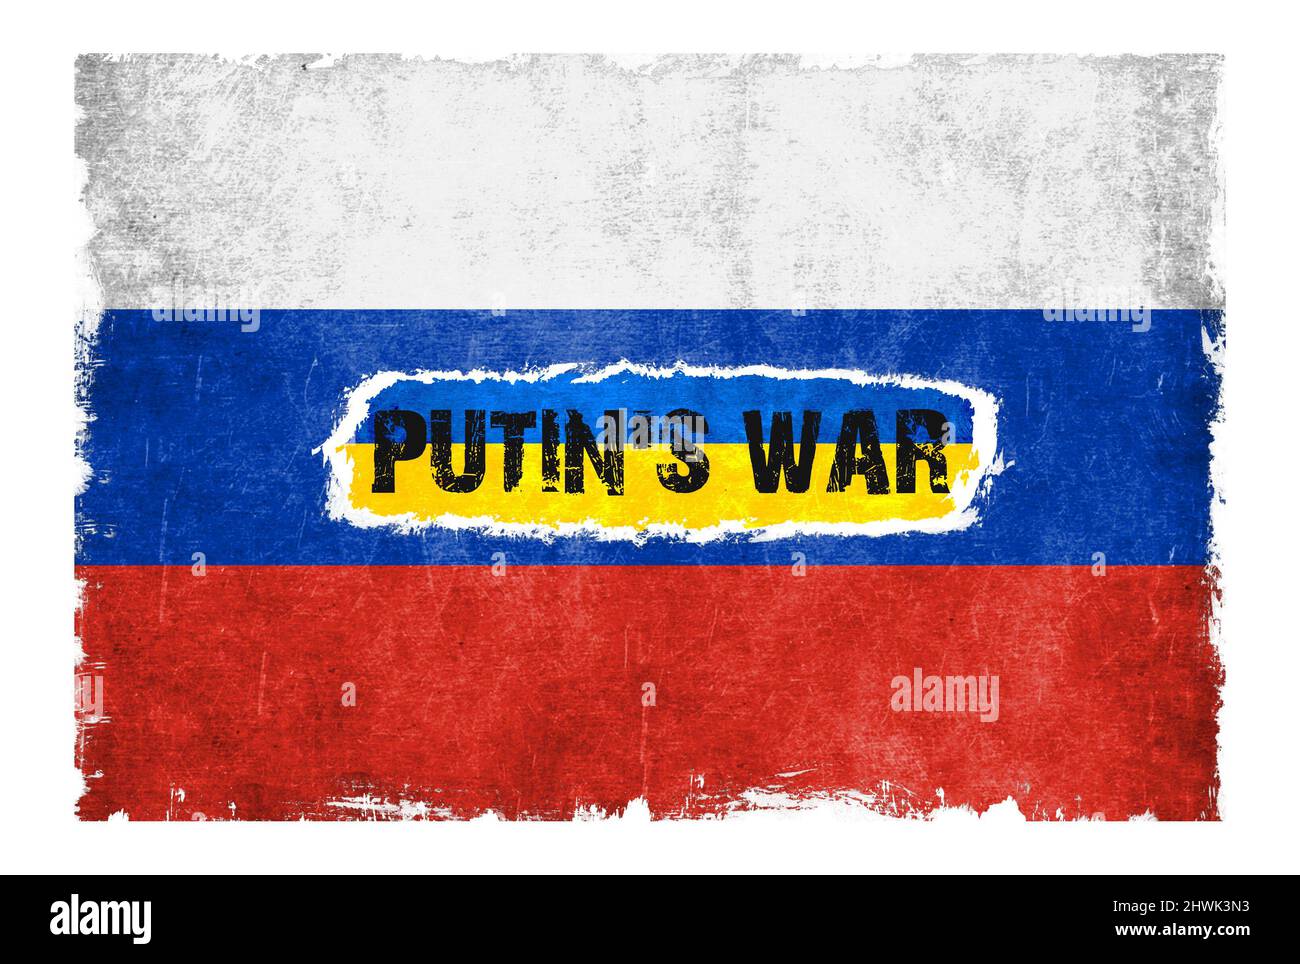 La guerra de Putin contra Ucrania Foto de stock